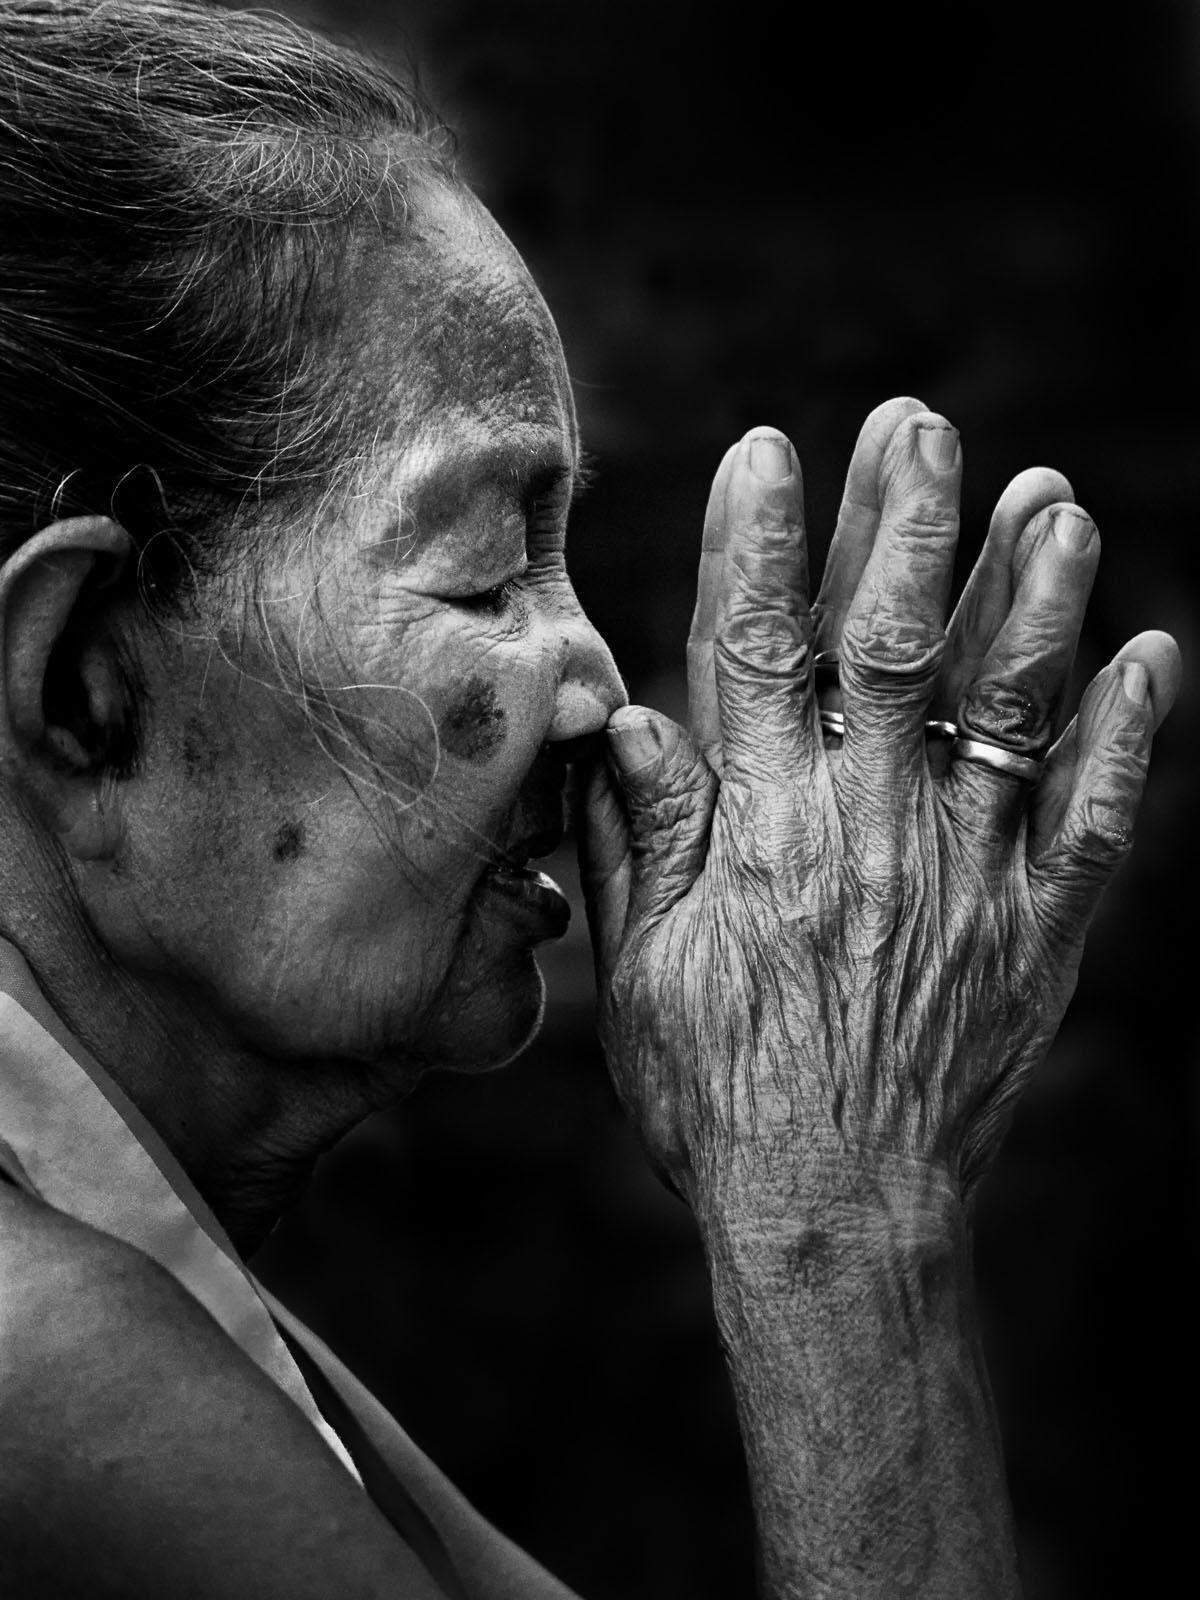 "Sie fand Frieden in ihren Gebeten", schreibt ein Fotograf aus Indonesien.